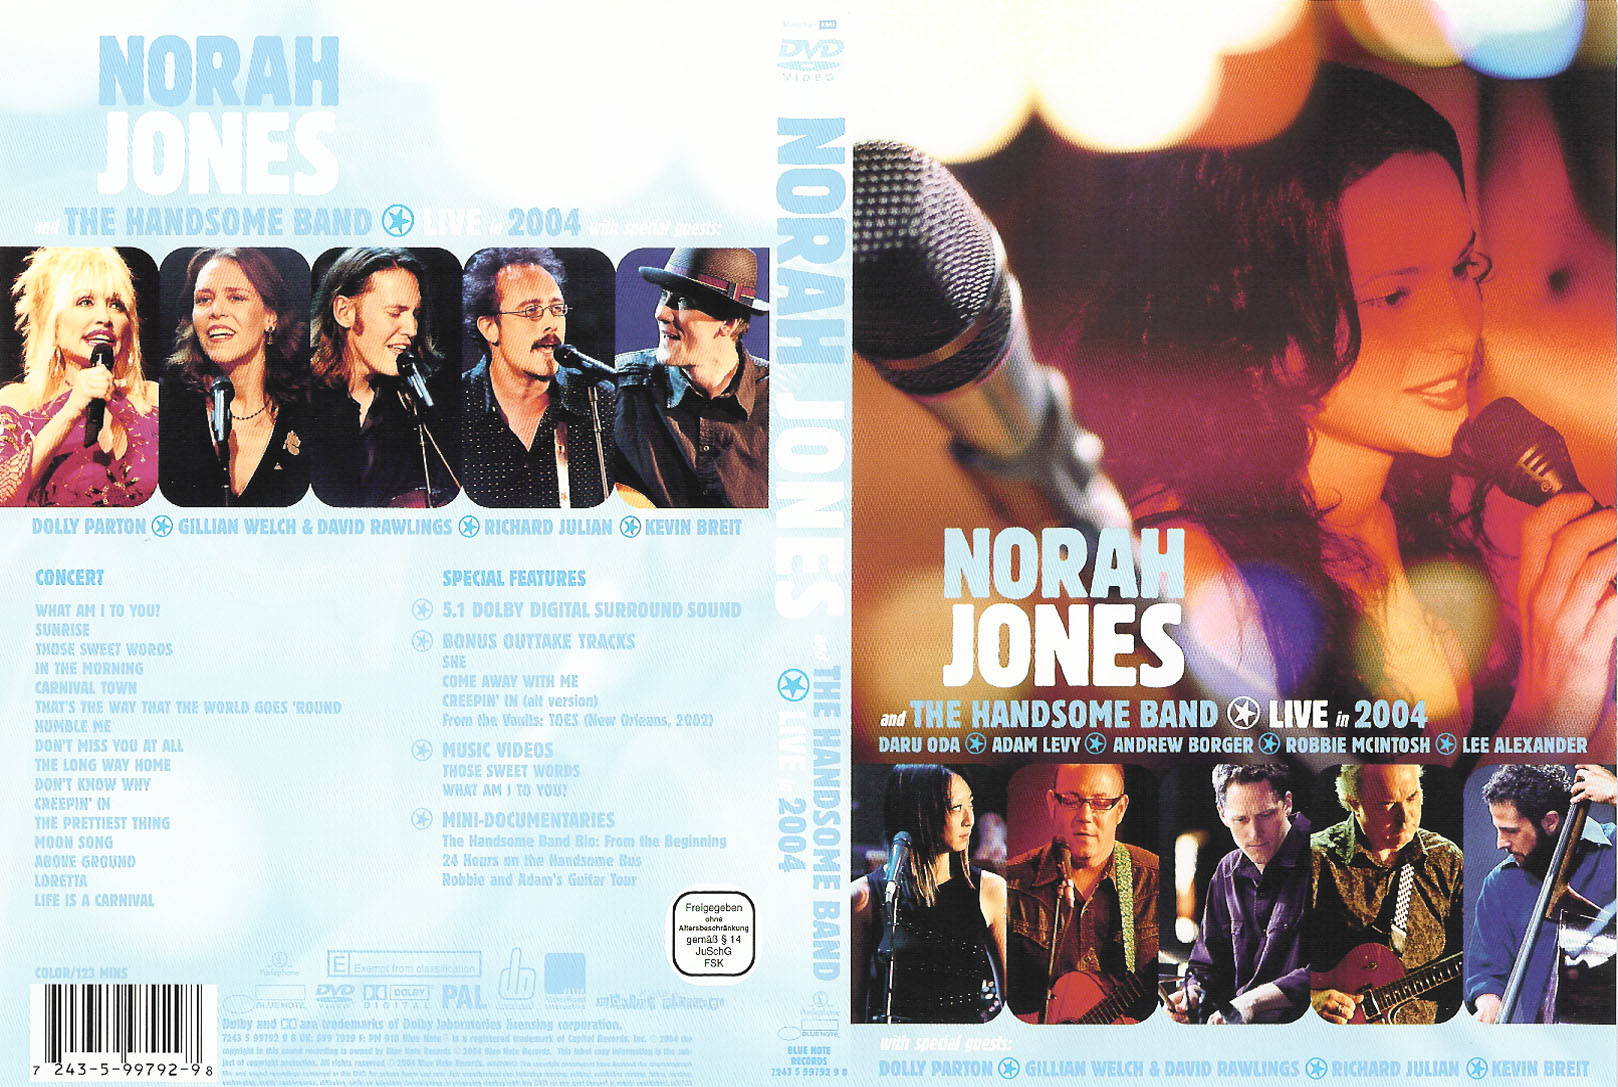 Jaquette DVD Nora Jones Live in 2004